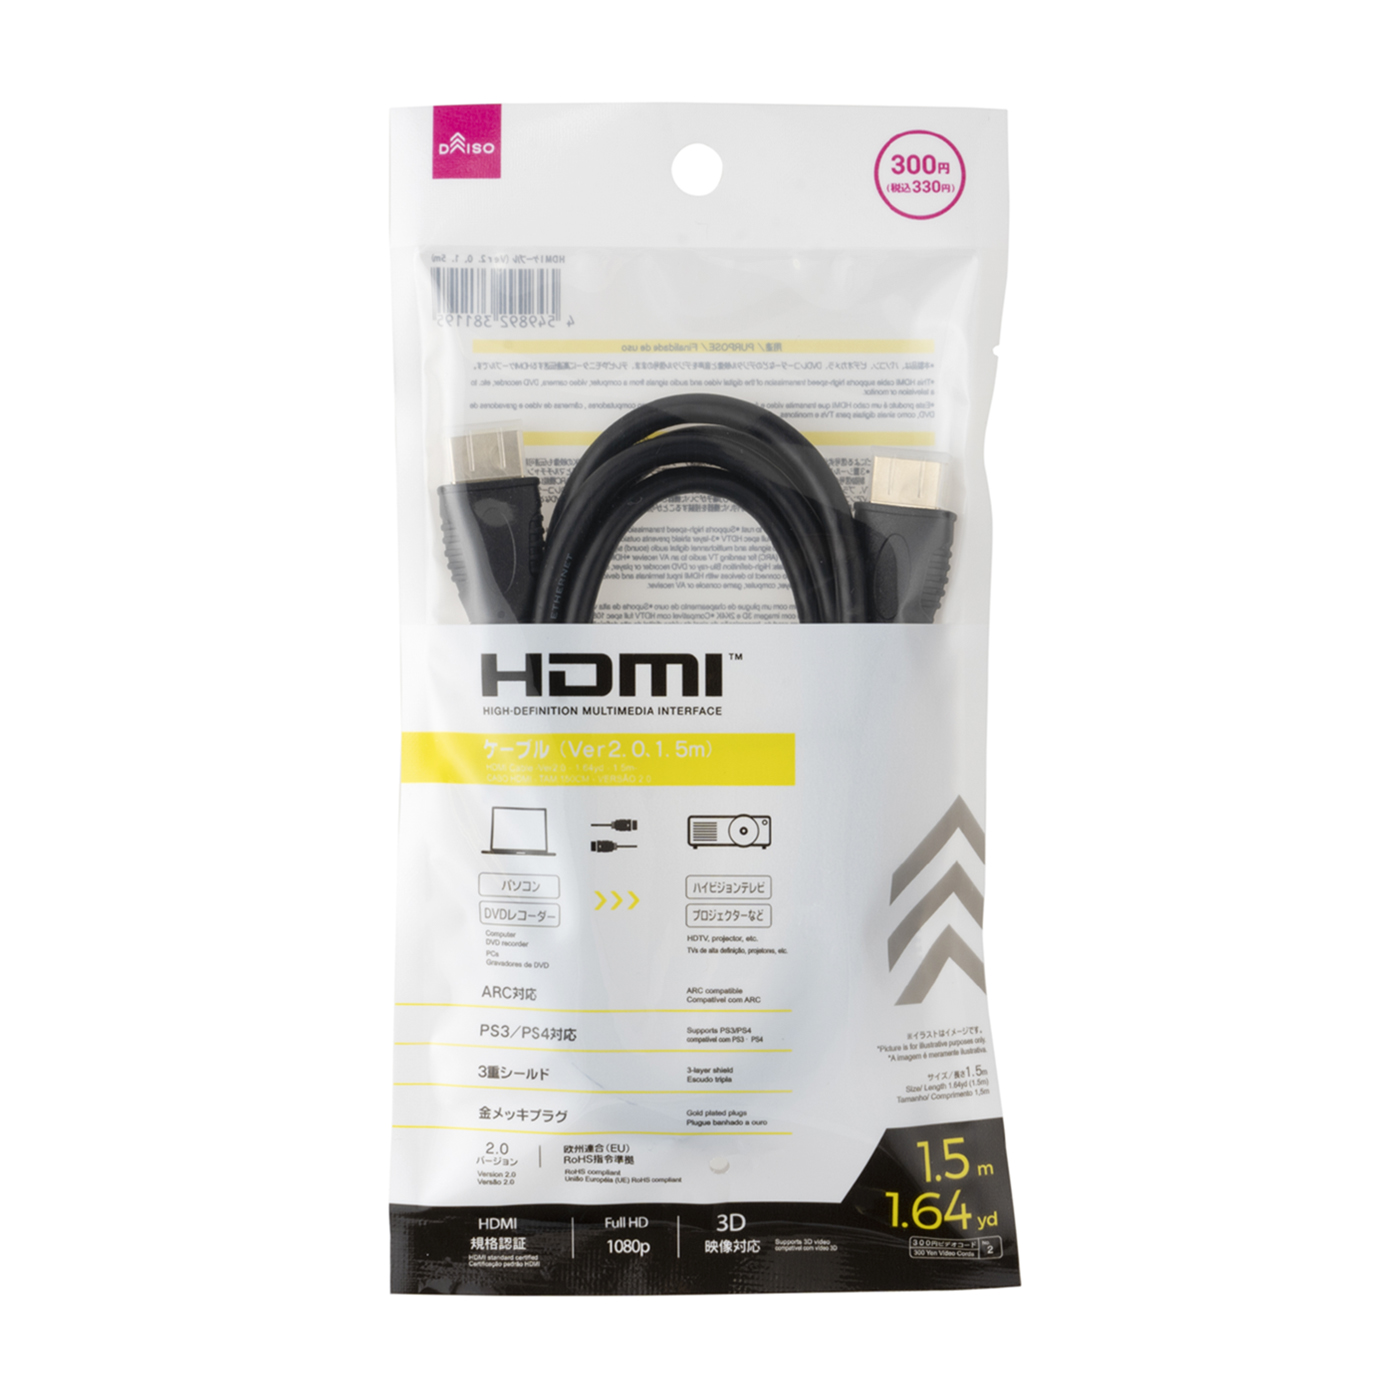 HDMIケーブル